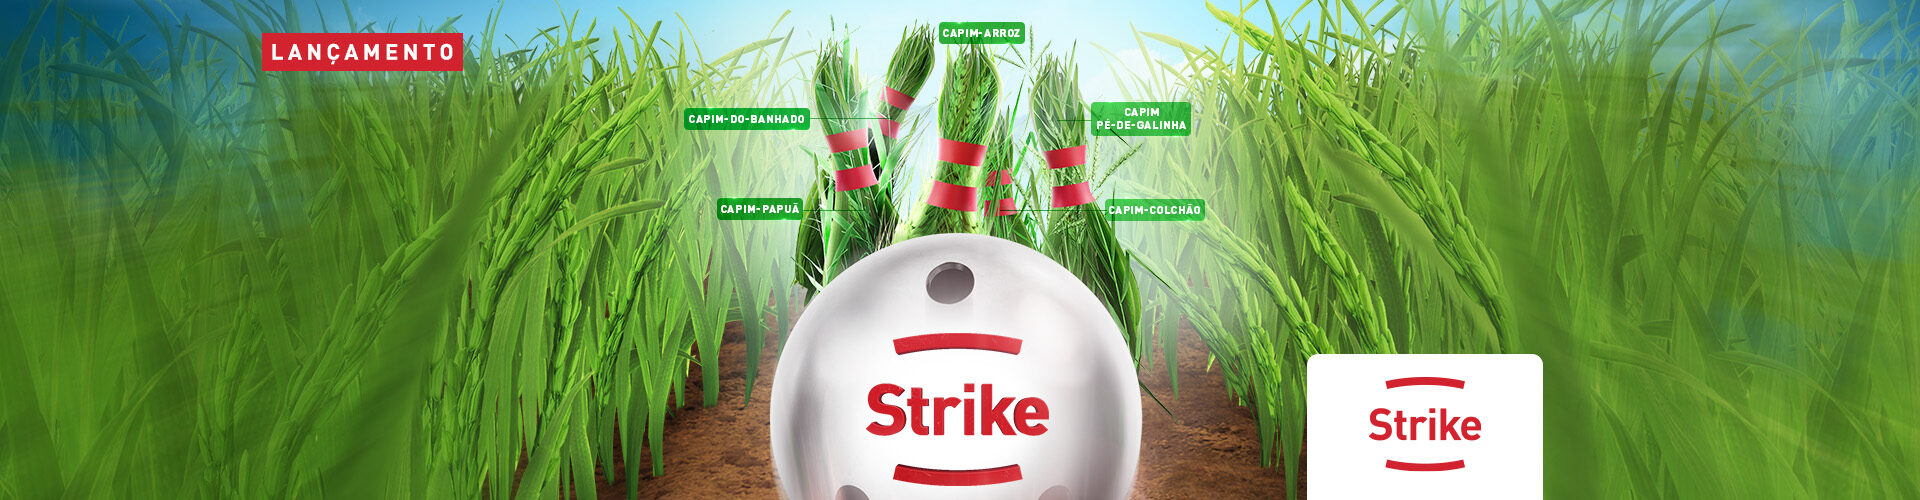 STRIKE, novo herbicida pós-emergente da IHARA altamente seletivo ao arroz.